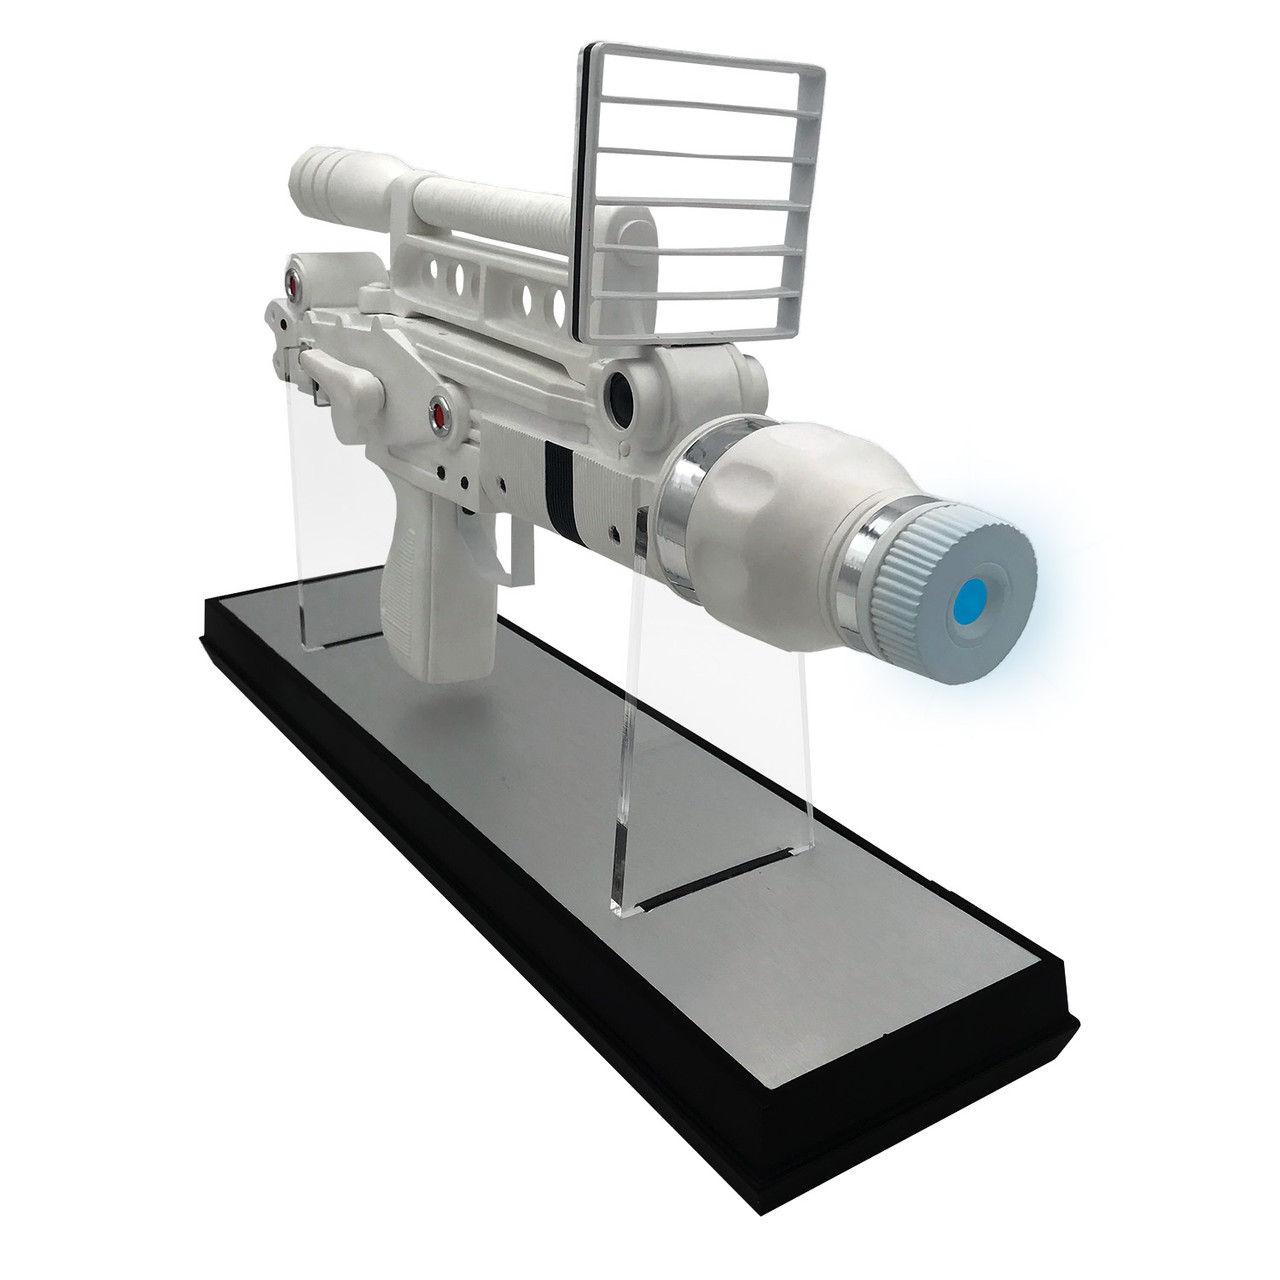 Factory Entertainment Moonraker Laser Gun 1:1 Scale Prop Replica 408885 5